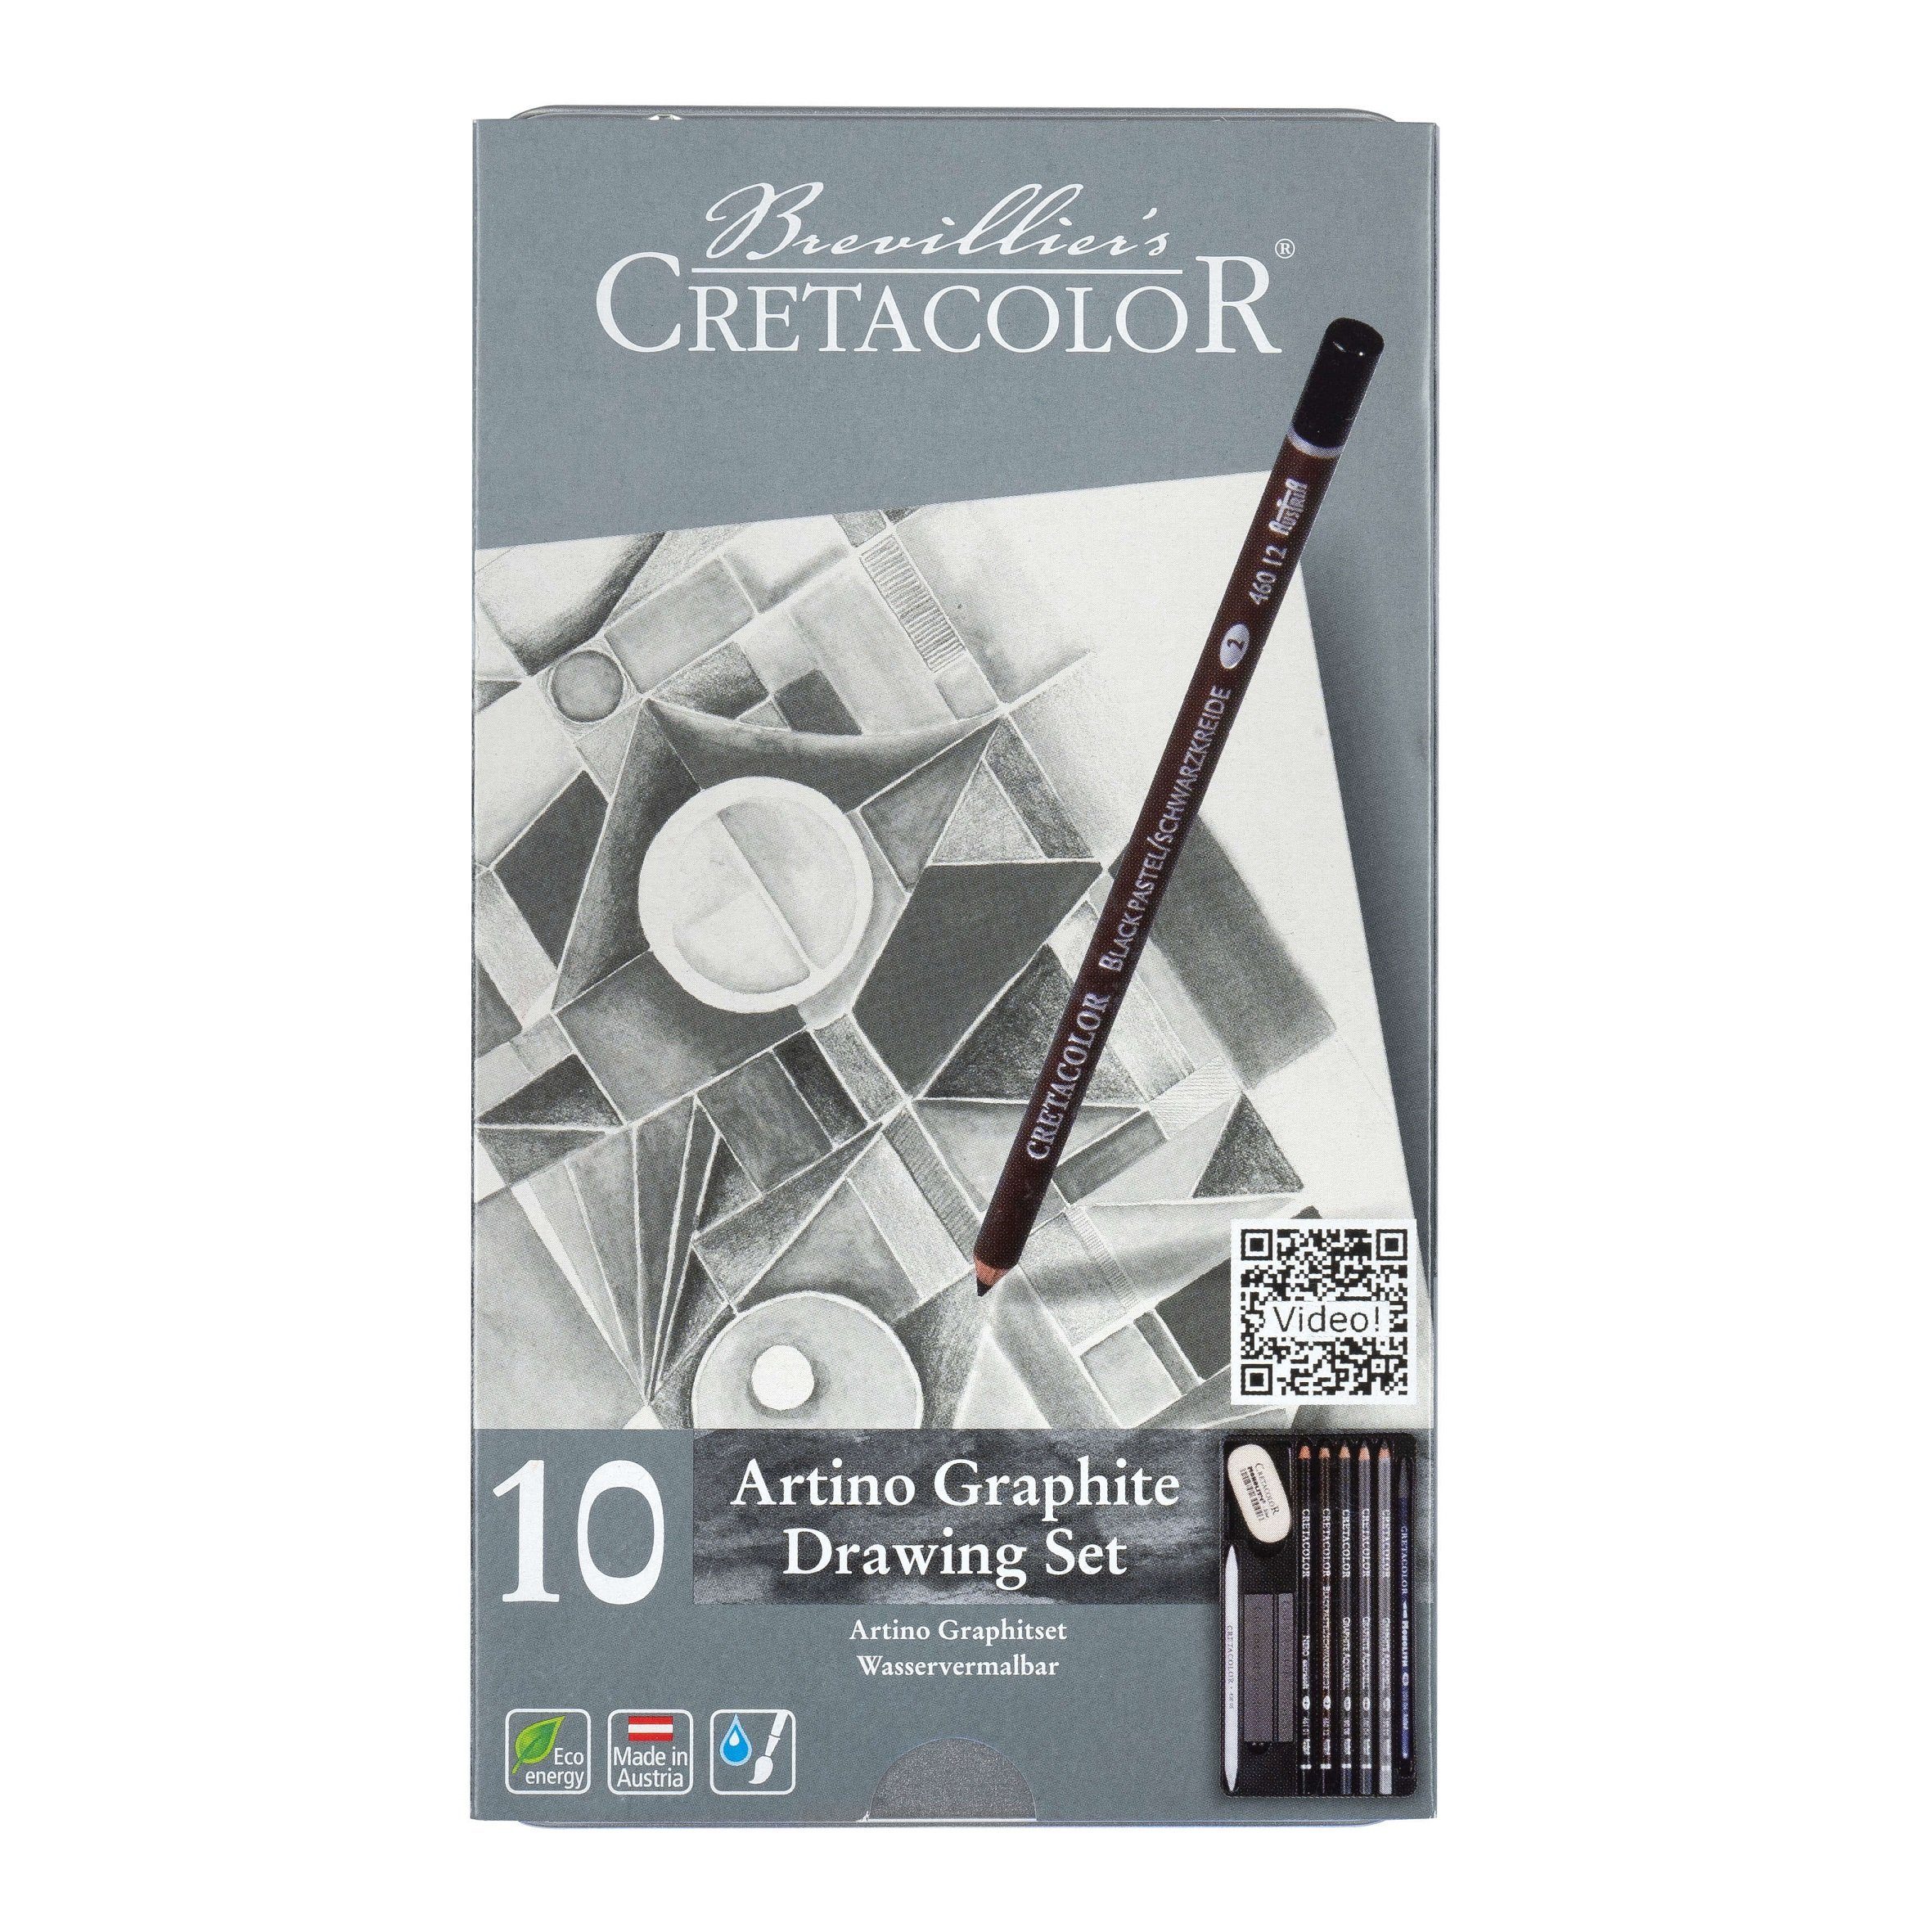 Brevilliers Cretacolor Künstlerstift 400 - Kreideprodukte wasservermalbare Graphit- Artino und 10-teilig, Austria 21, Graphitset Made in